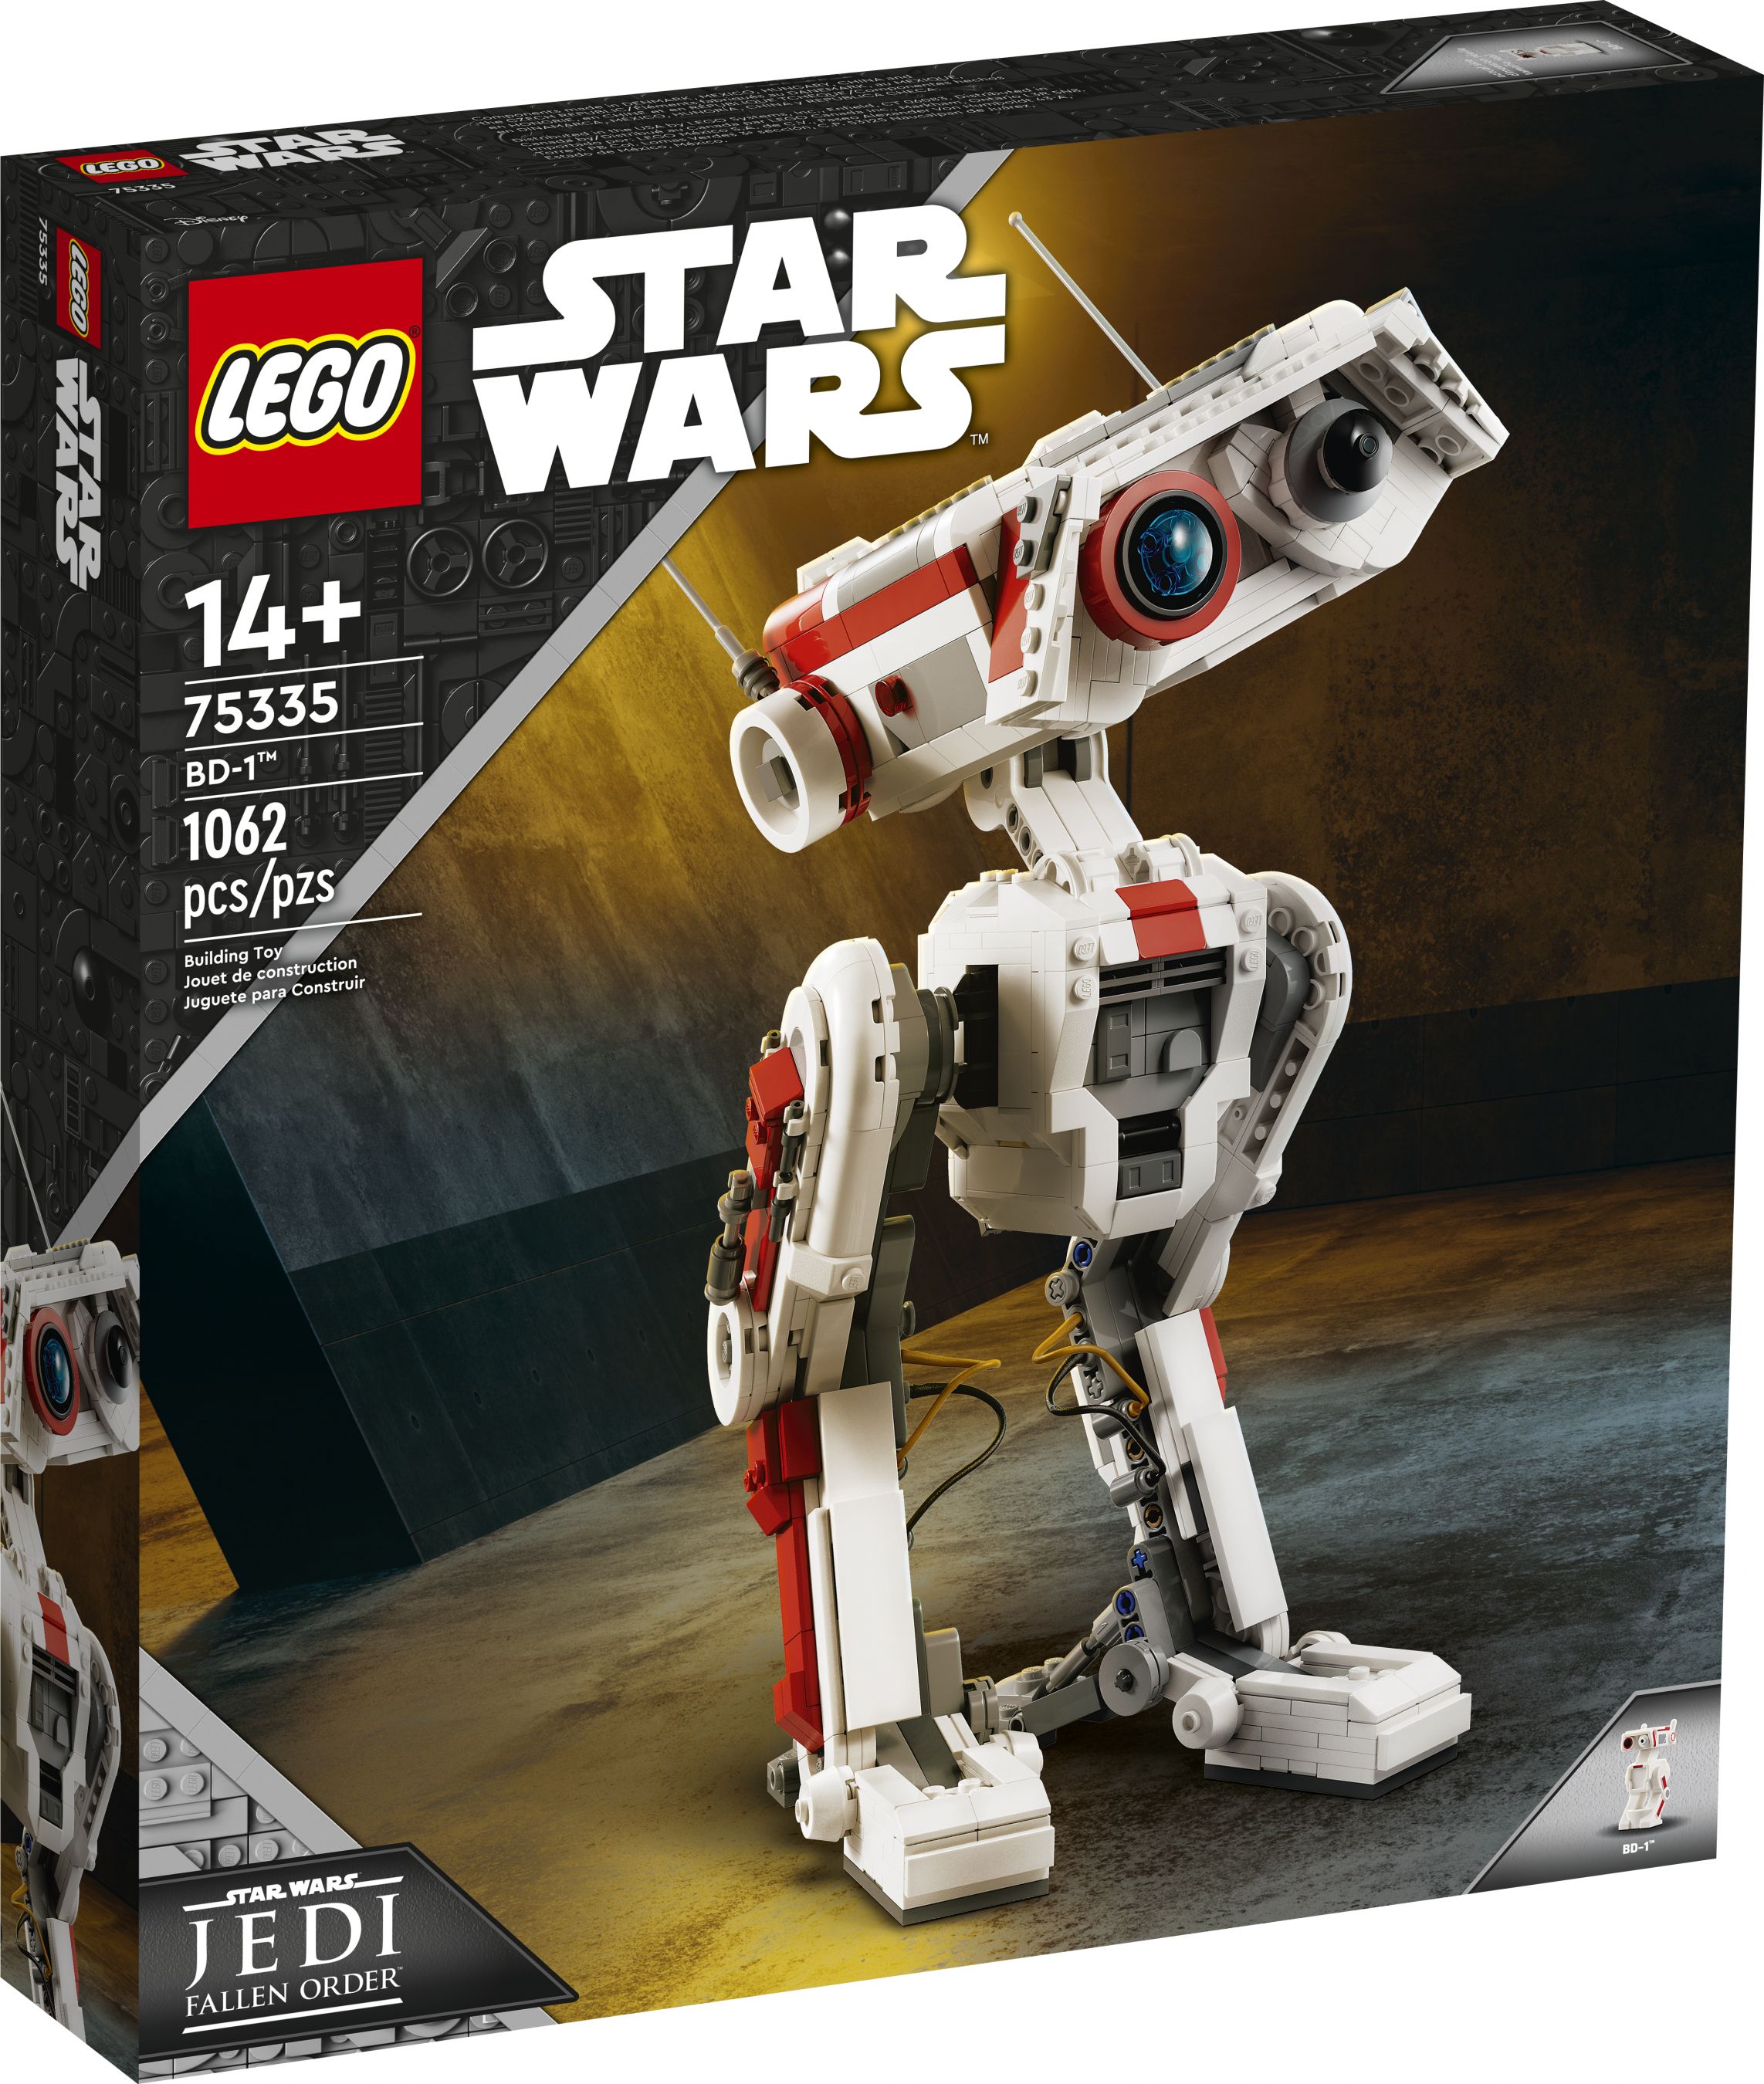 LEGO Star Wars 75335 BD-1™ LEGO_75335_alt1.jpg